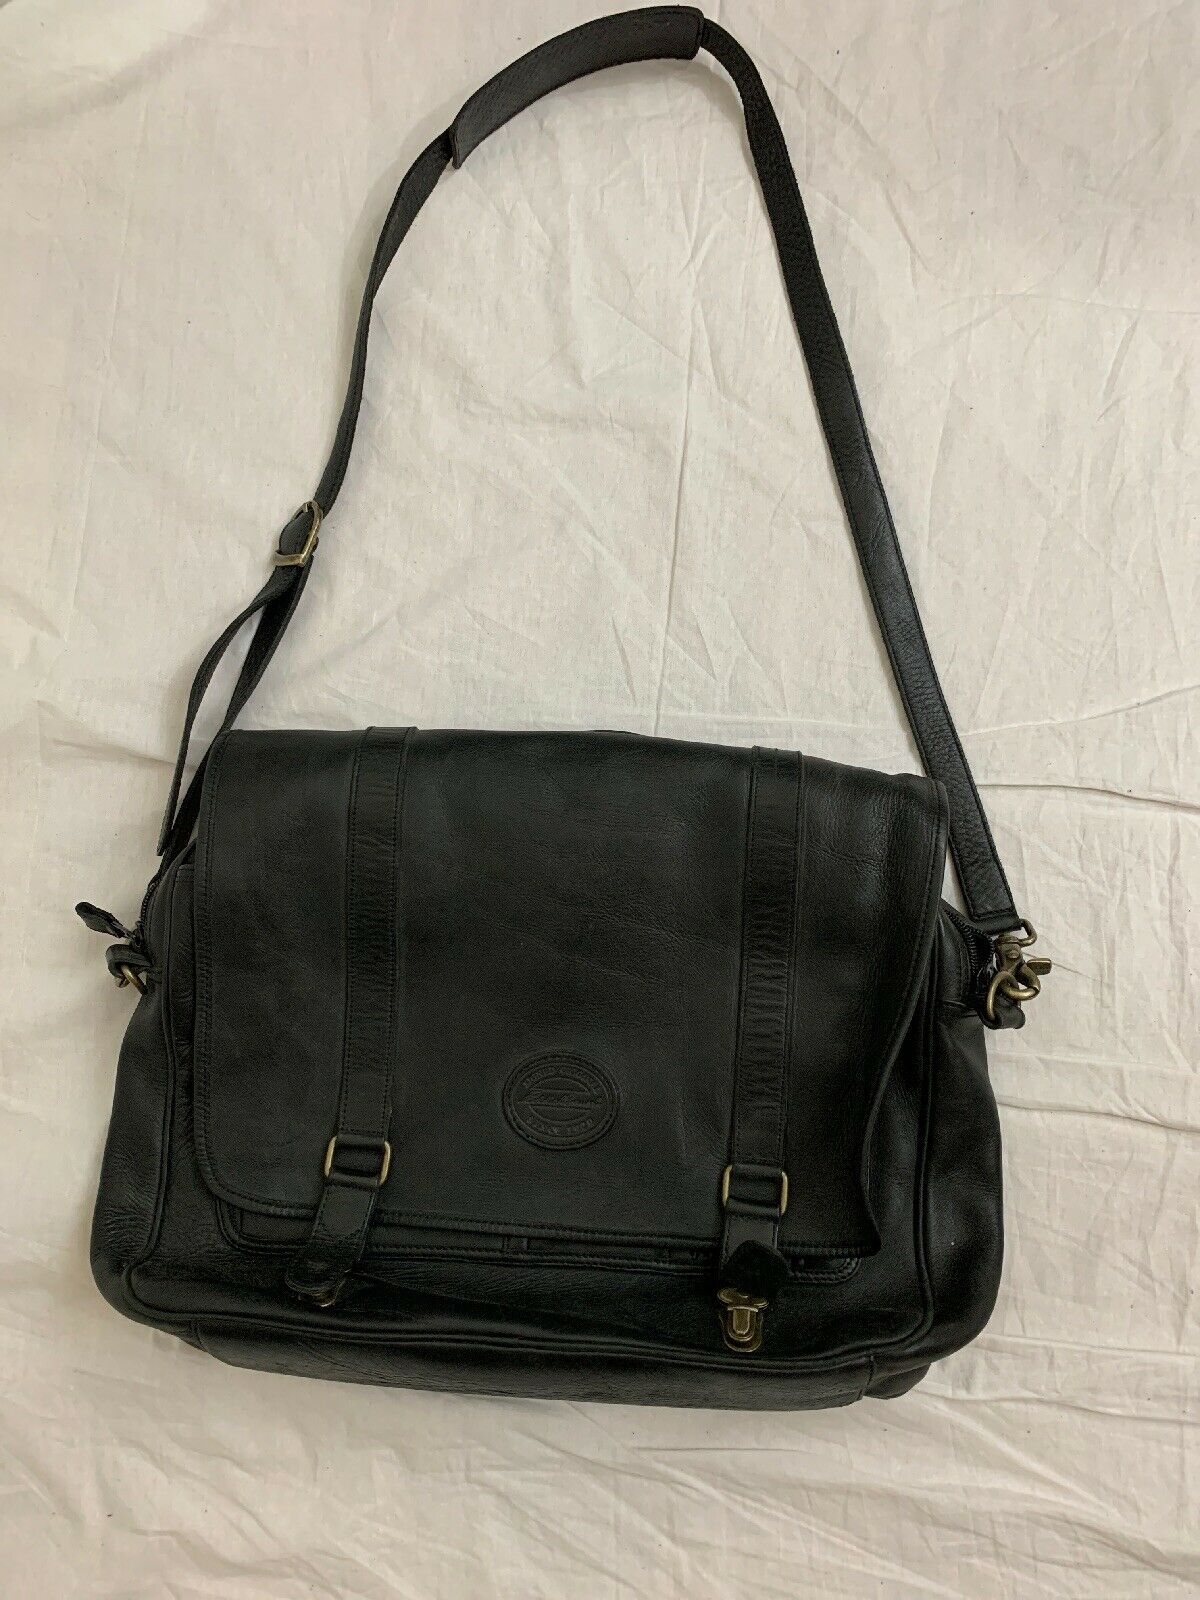 eddie bauer Solid Black Genuine Leather Messenger Shoulder Tote Bag | eBay